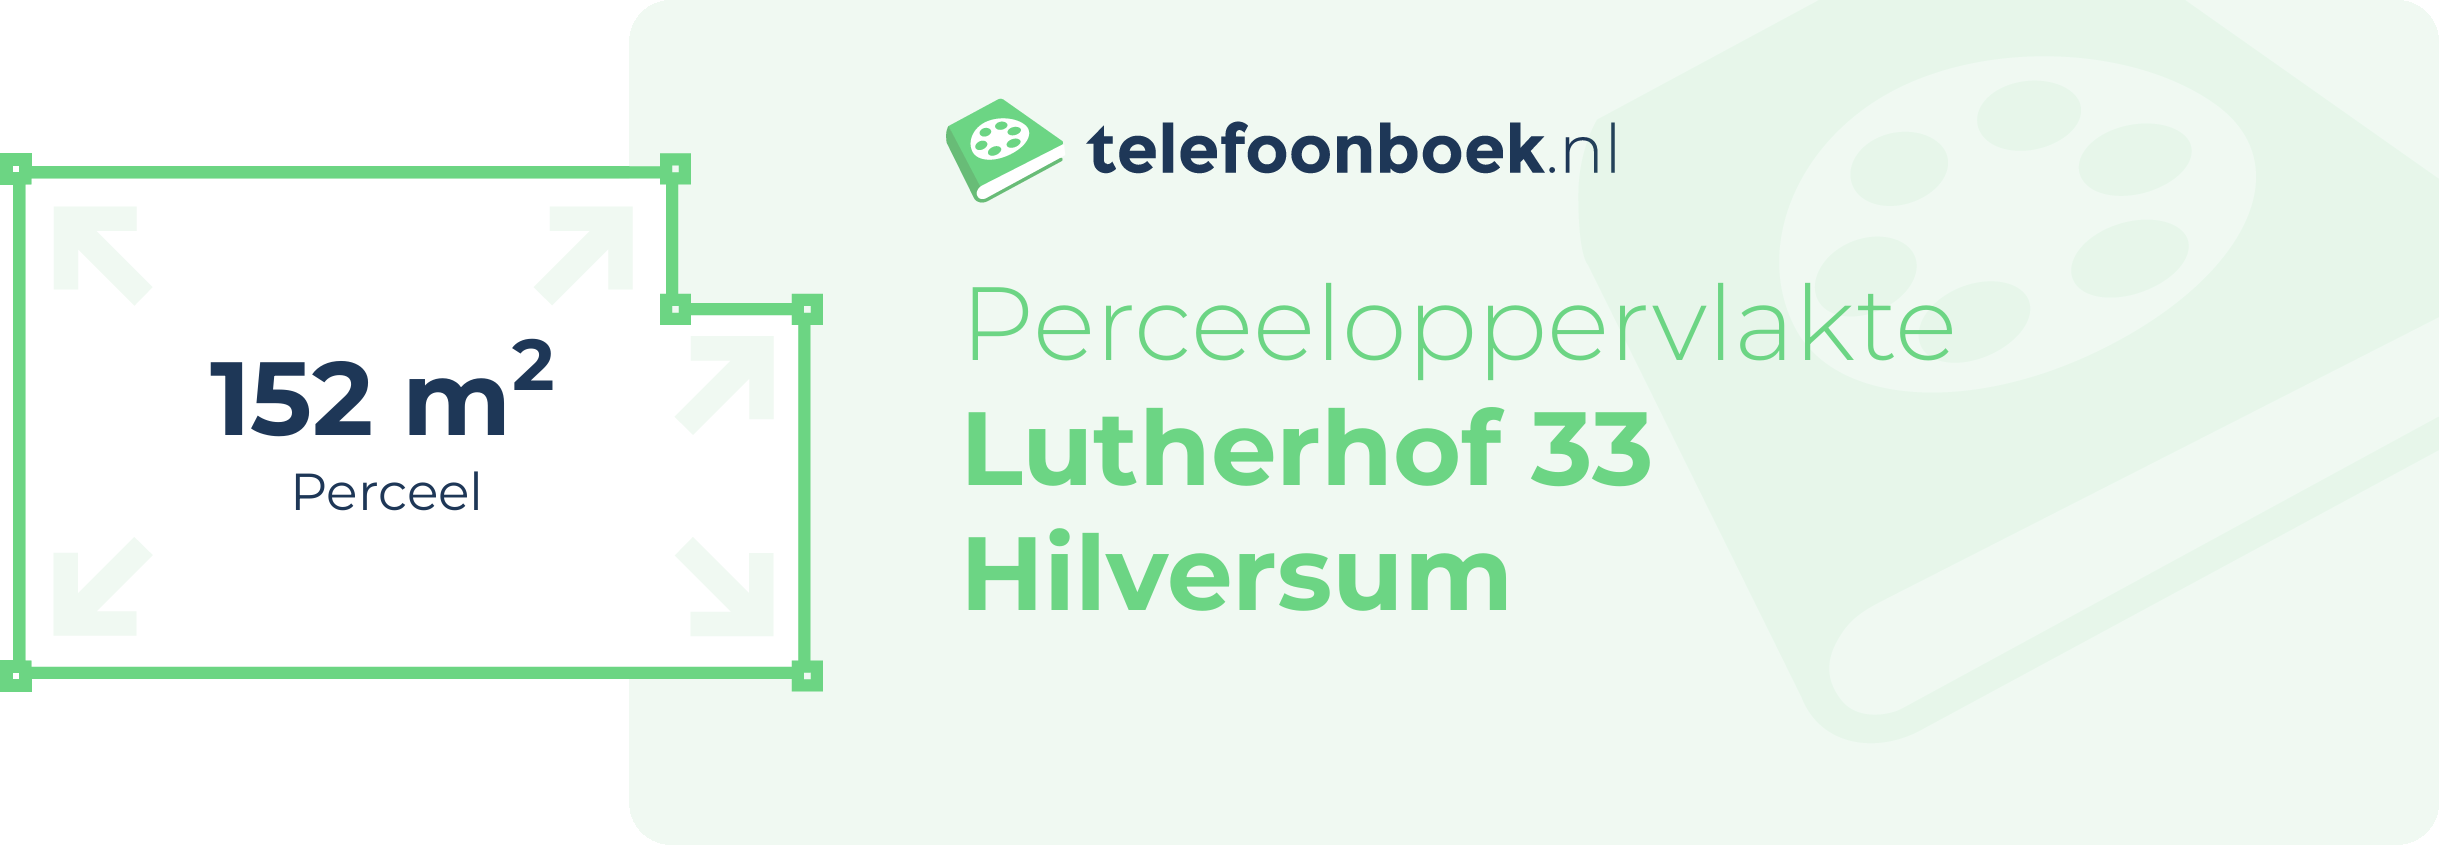 Perceeloppervlakte Lutherhof 33 Hilversum